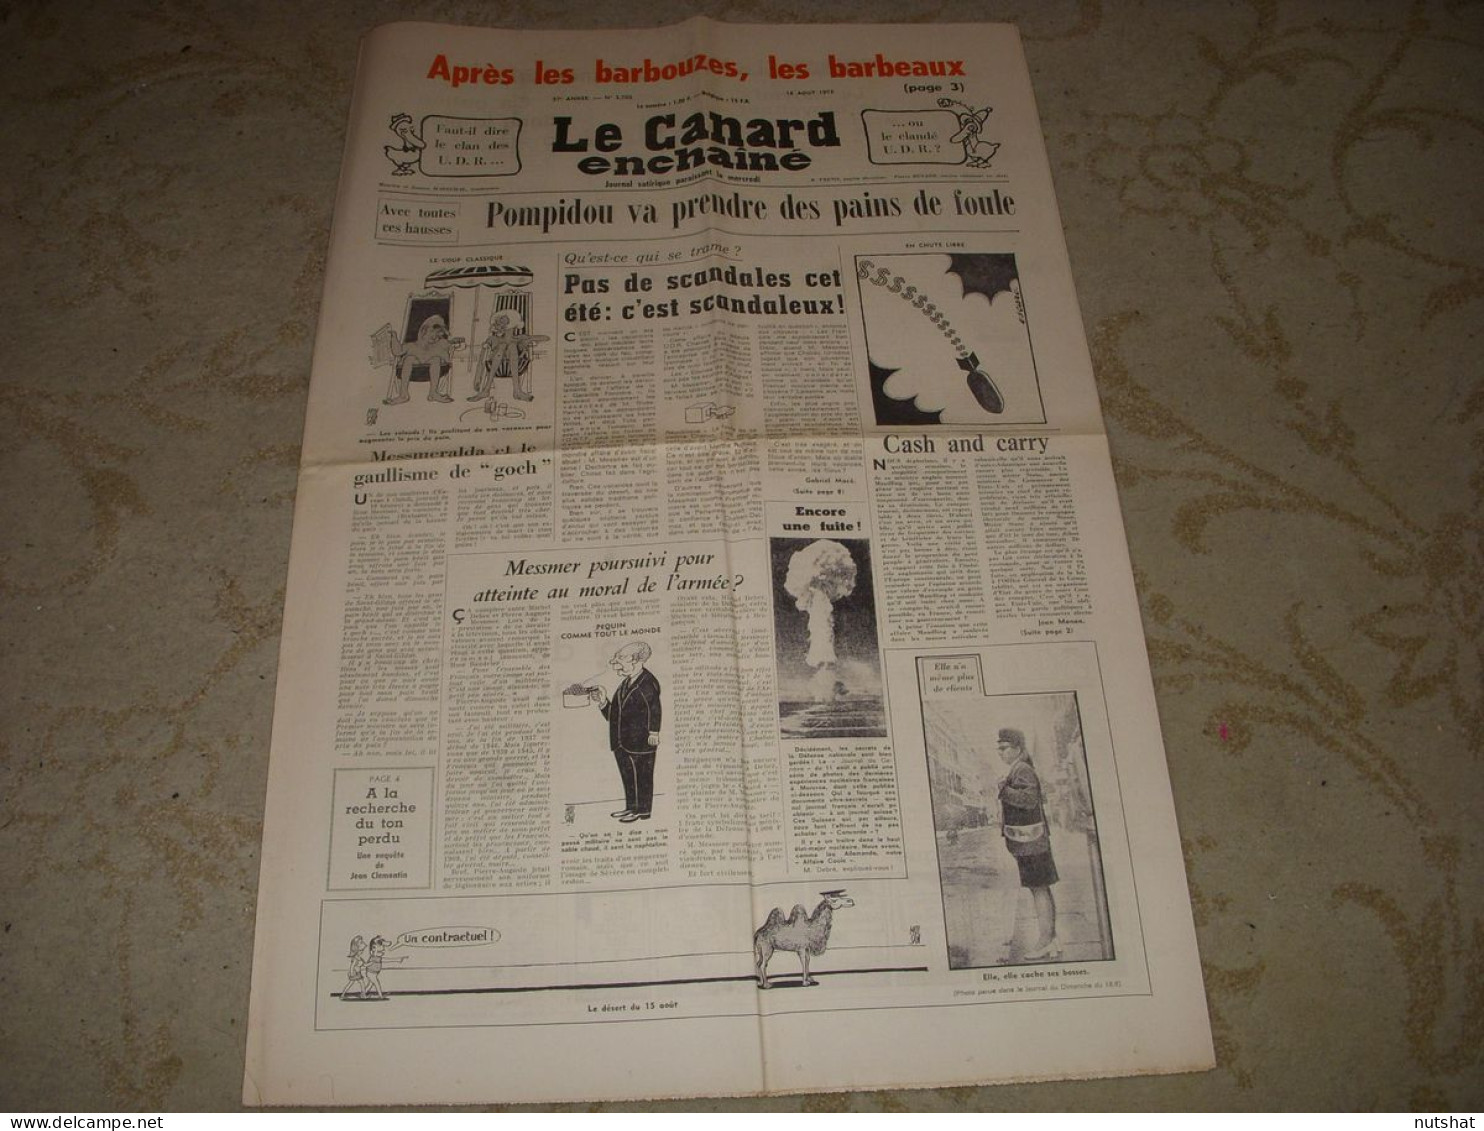 CANARD ENCHAINE 2703 16.08.1972 Arthur CONTE Jean-Louis BARRAULT Jean FREUSTIE - Politique